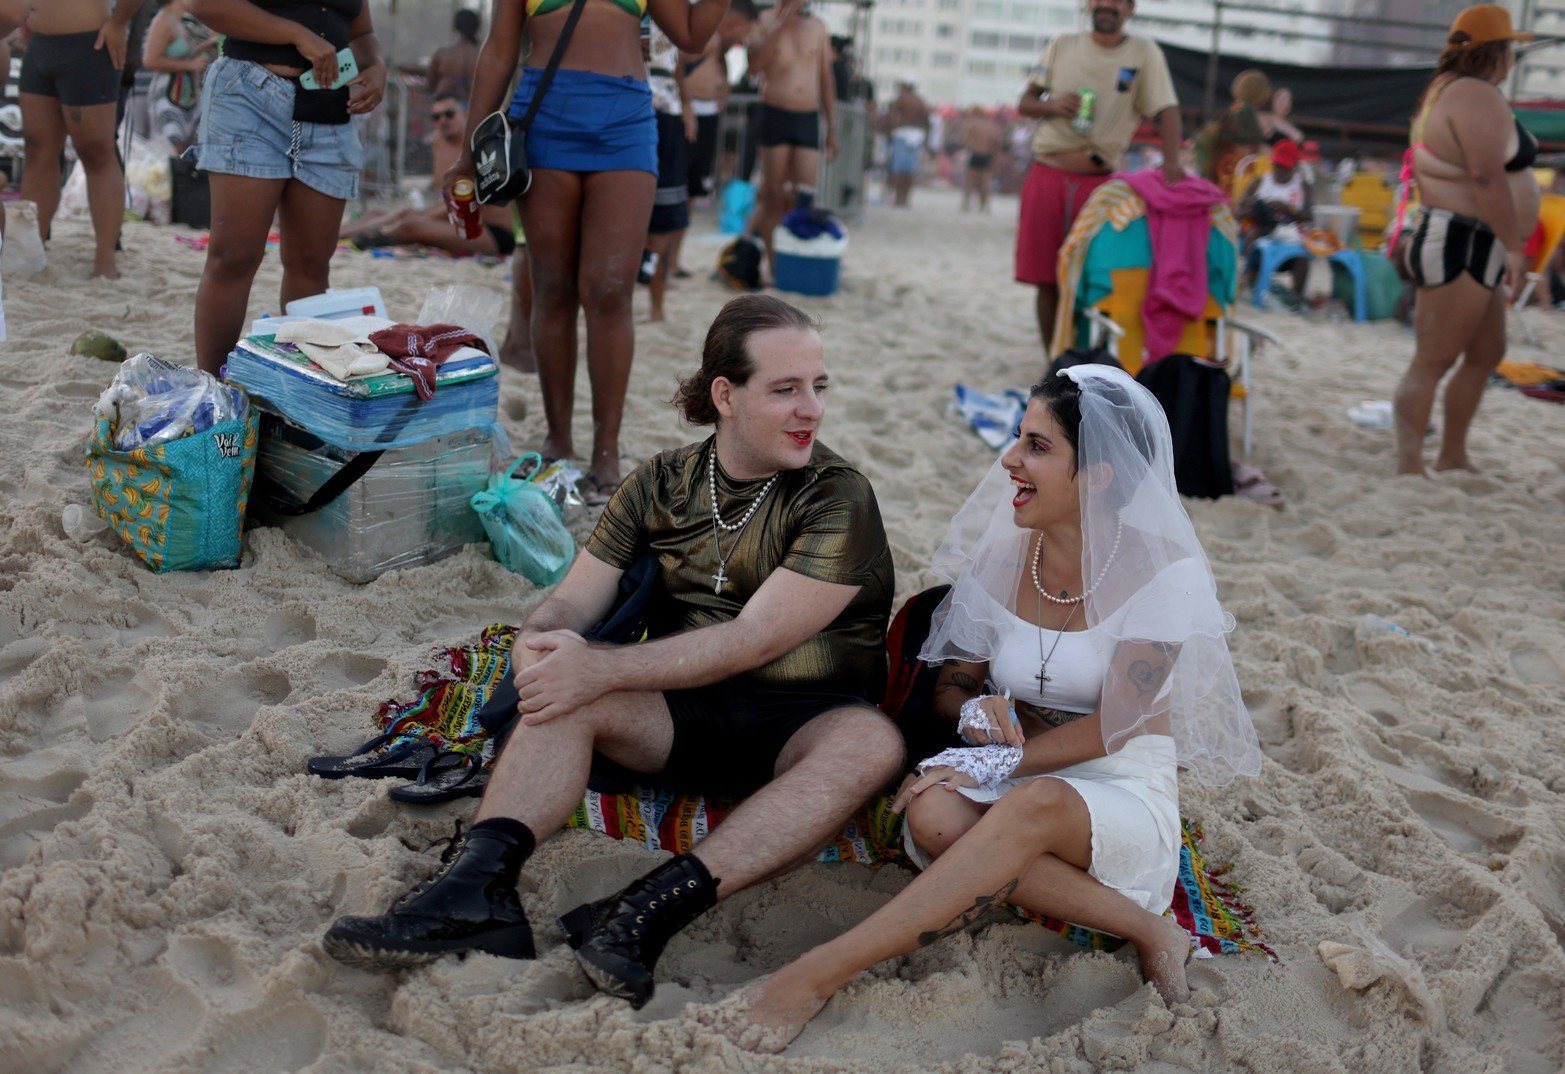 Los fanáticos de la reina del pop coparon las playas de Río de Janeiro.